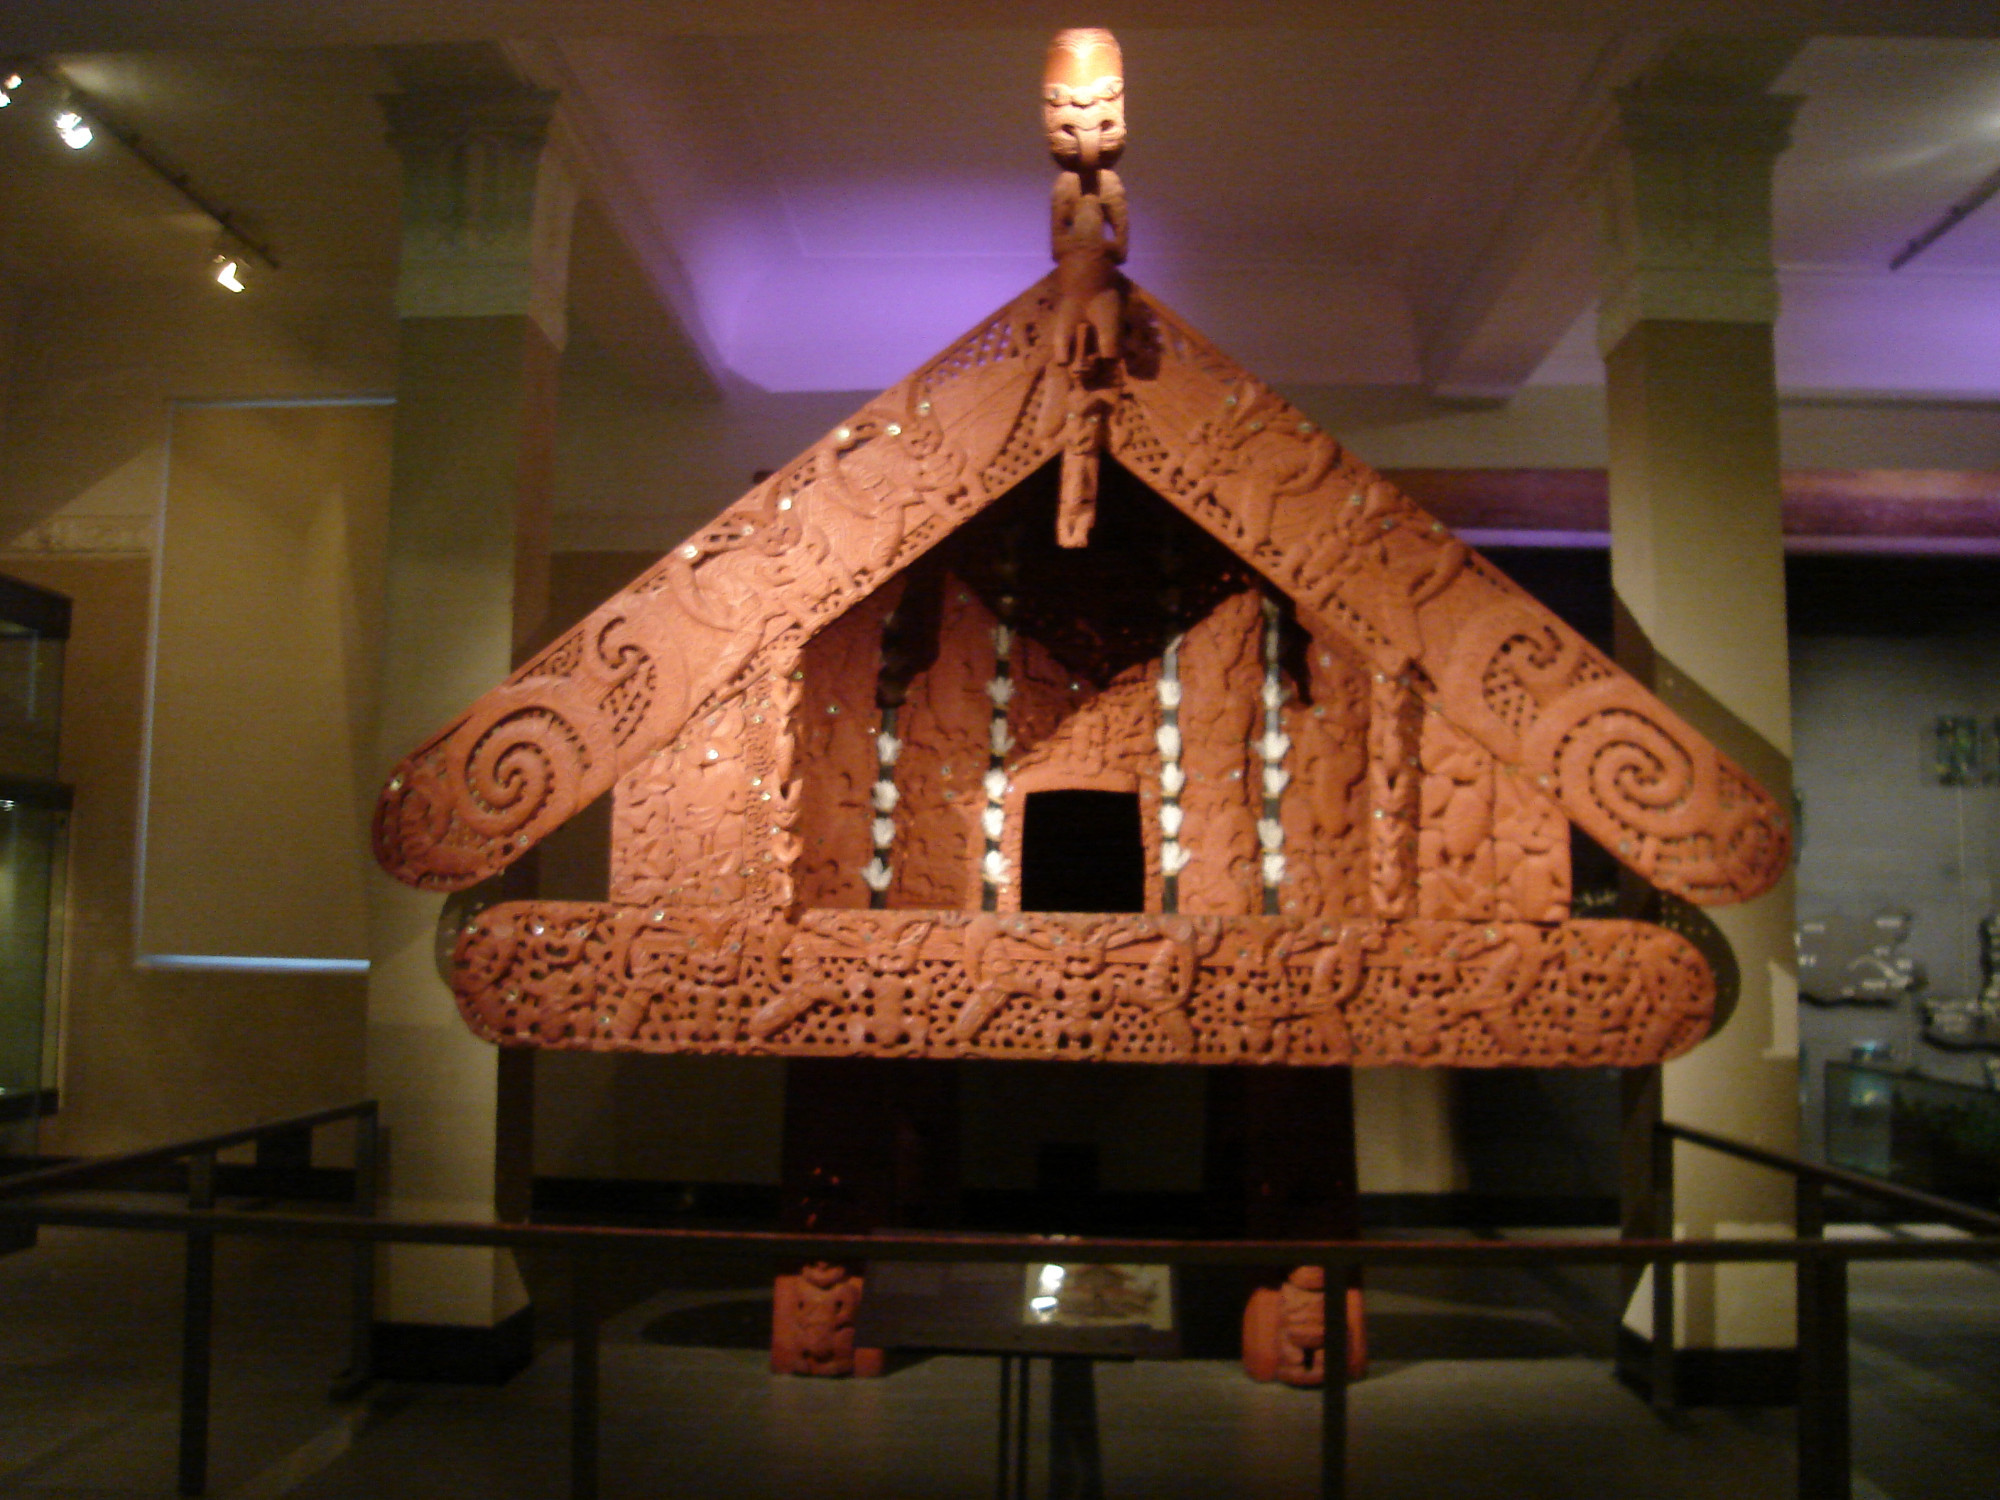 Maori architecture